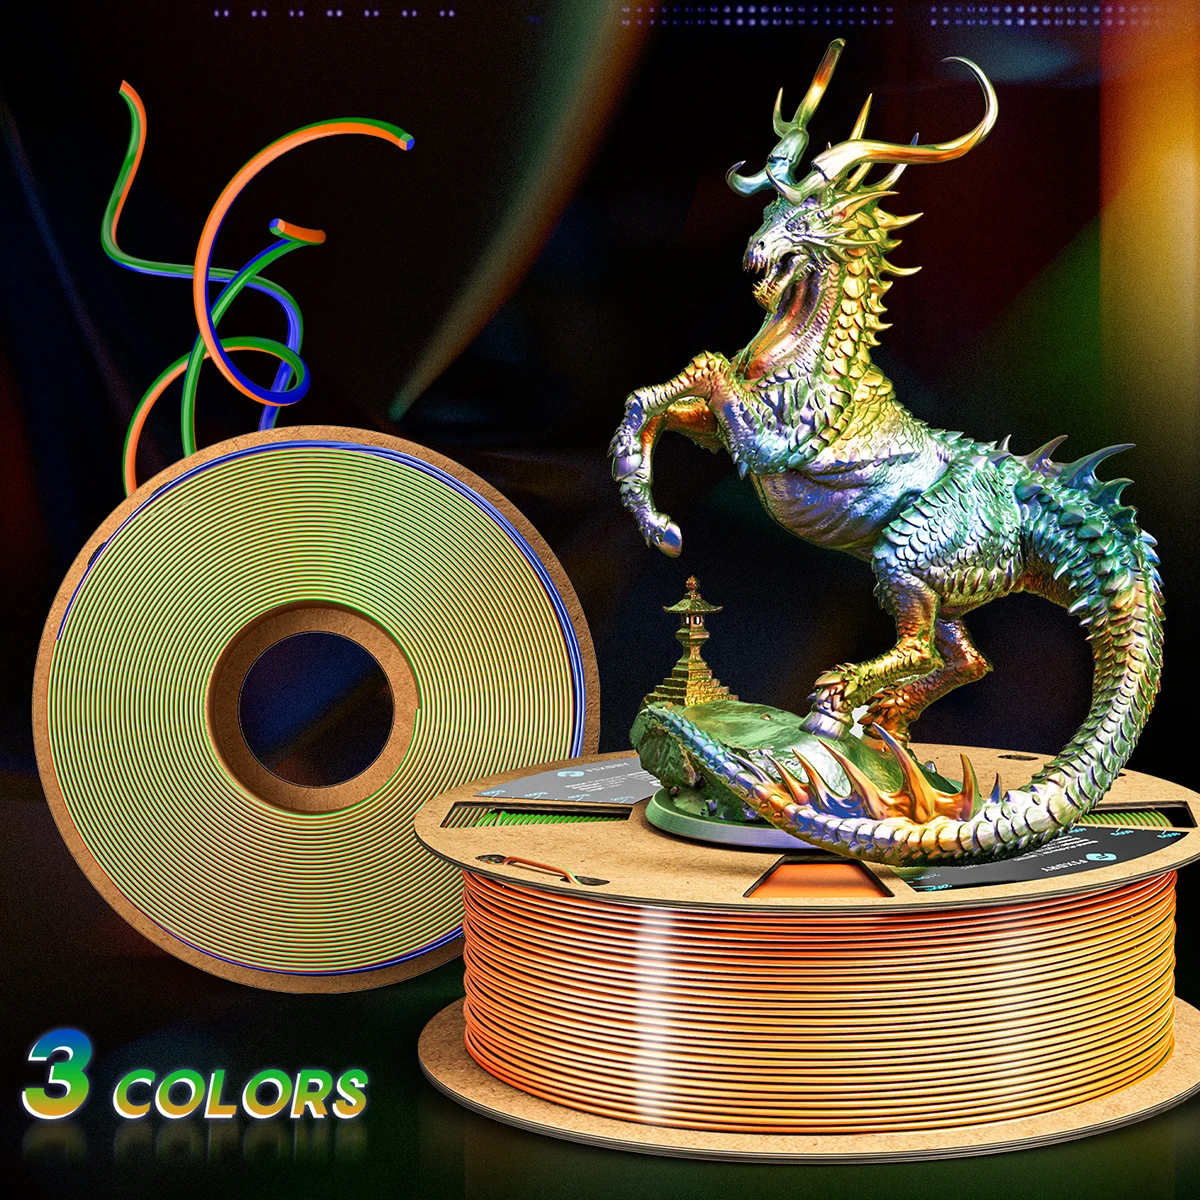 

1KG/2.2LBS PLA Filament Silk Tri-Color 3D Printer Filament 1.75mm Diameter 330M Long For 3D Printing 3D Pen